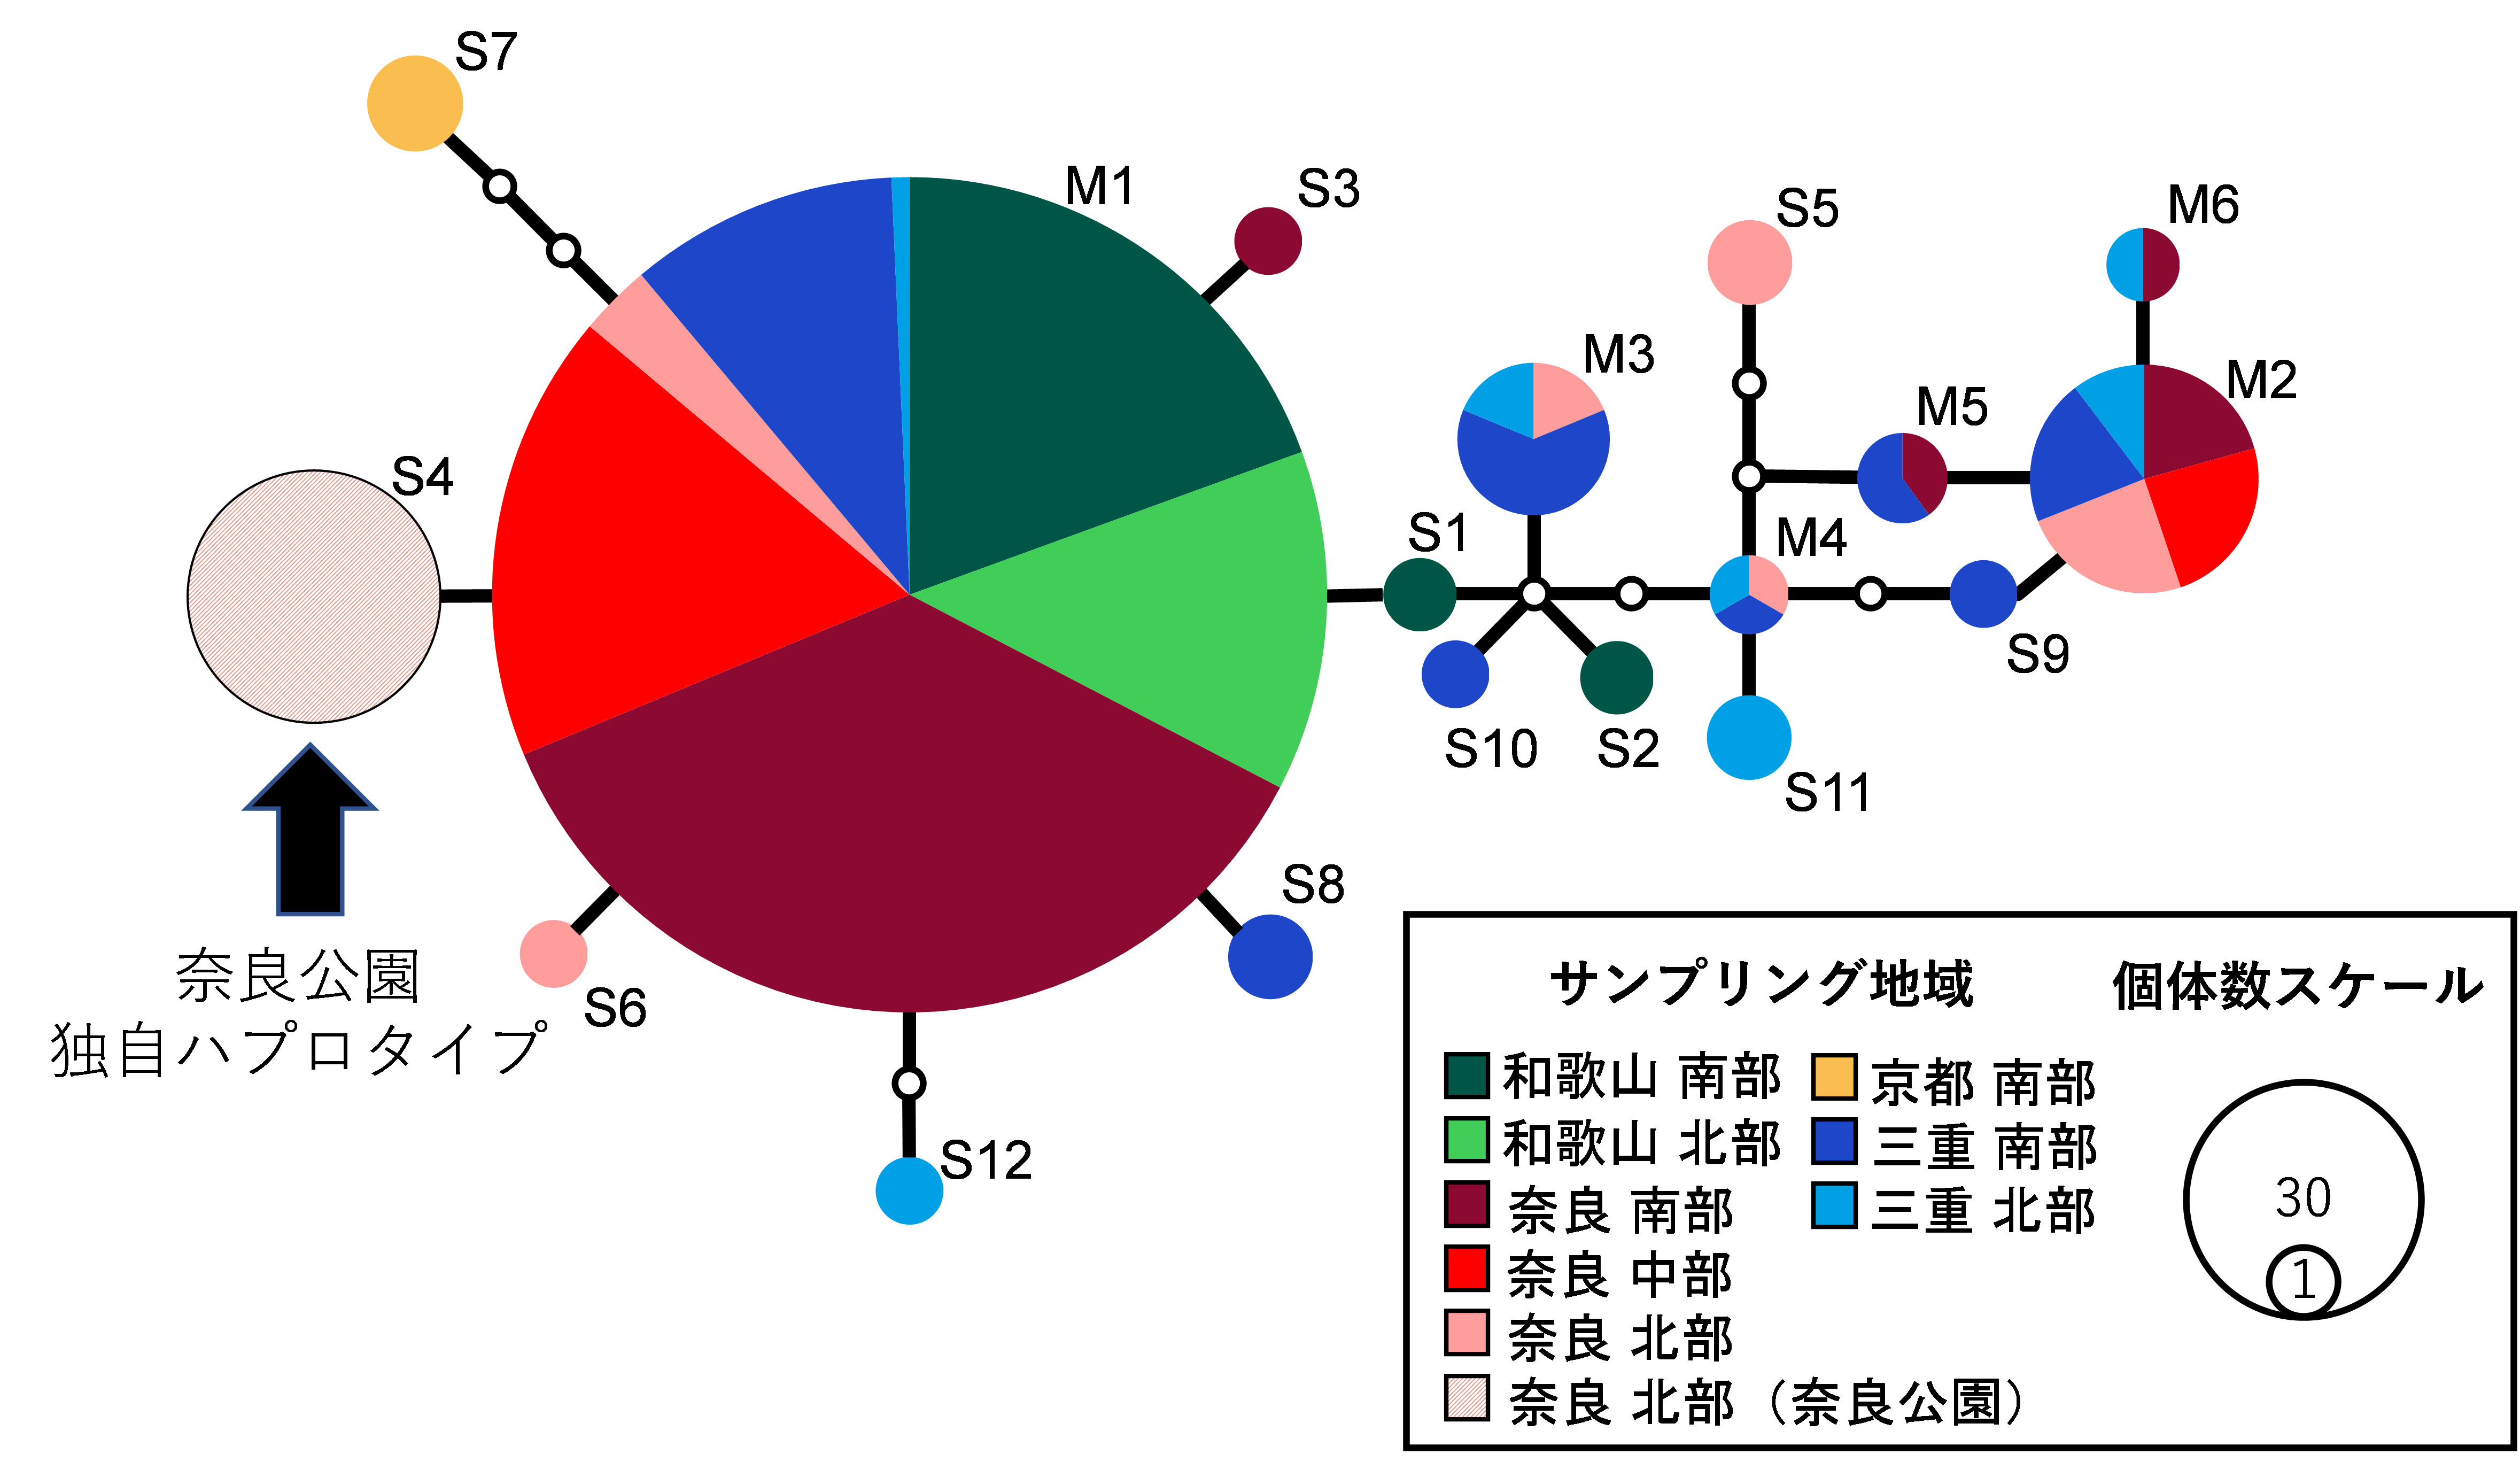 図3. ミトコンドリアDNA の部分配列（683 塩基）の系統関係を示すハプロタイプネットワーク。紀伊半島では18 のハプロタイプが確認され、M1 が紀伊半島全域で確認され、優占している。また、少数ではあるが各地域で固有のハプロタイプも確認できる。奈良公園では、S4 のみが確認された。一つの円はそれぞれのハプロタイプを示し、大きさは確認された個体数を、色はサンプルの採取地域を示している。黒い棒が1 塩基の違い、白い丸は今回確認されなかったハプロタイプを表している（例：M1 とS4 は683 塩基中1 塩基の違いがある）。の画像